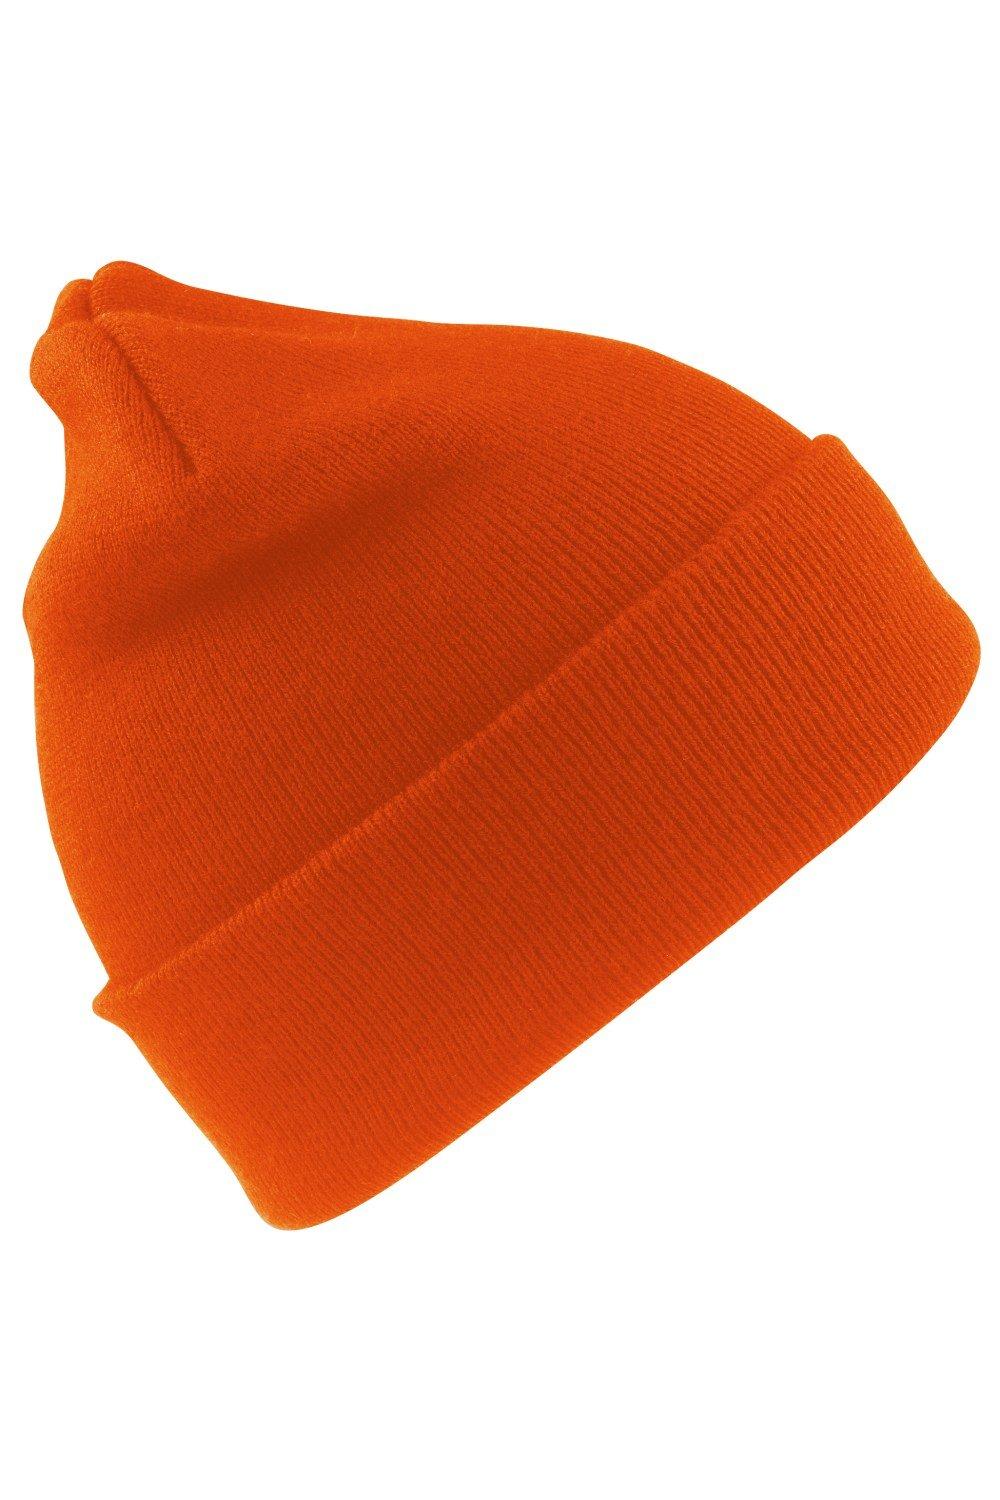 Шерстяная термолыжная/зимняя шапка с утеплителем Thinsulate 3M Result, оранжевый пряжа семеновская пряжа natasha 28 песочный 5 шт по 100 г